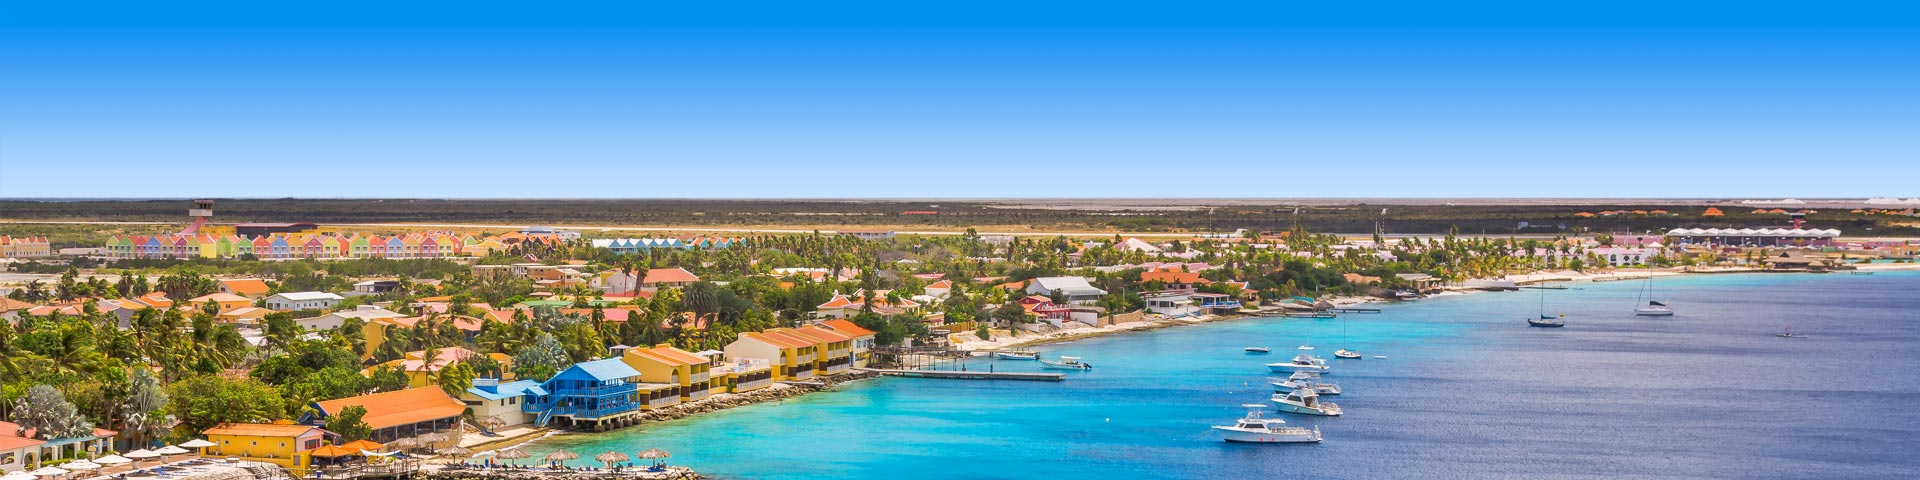 De prachtige zee en het centrum van Bonaire